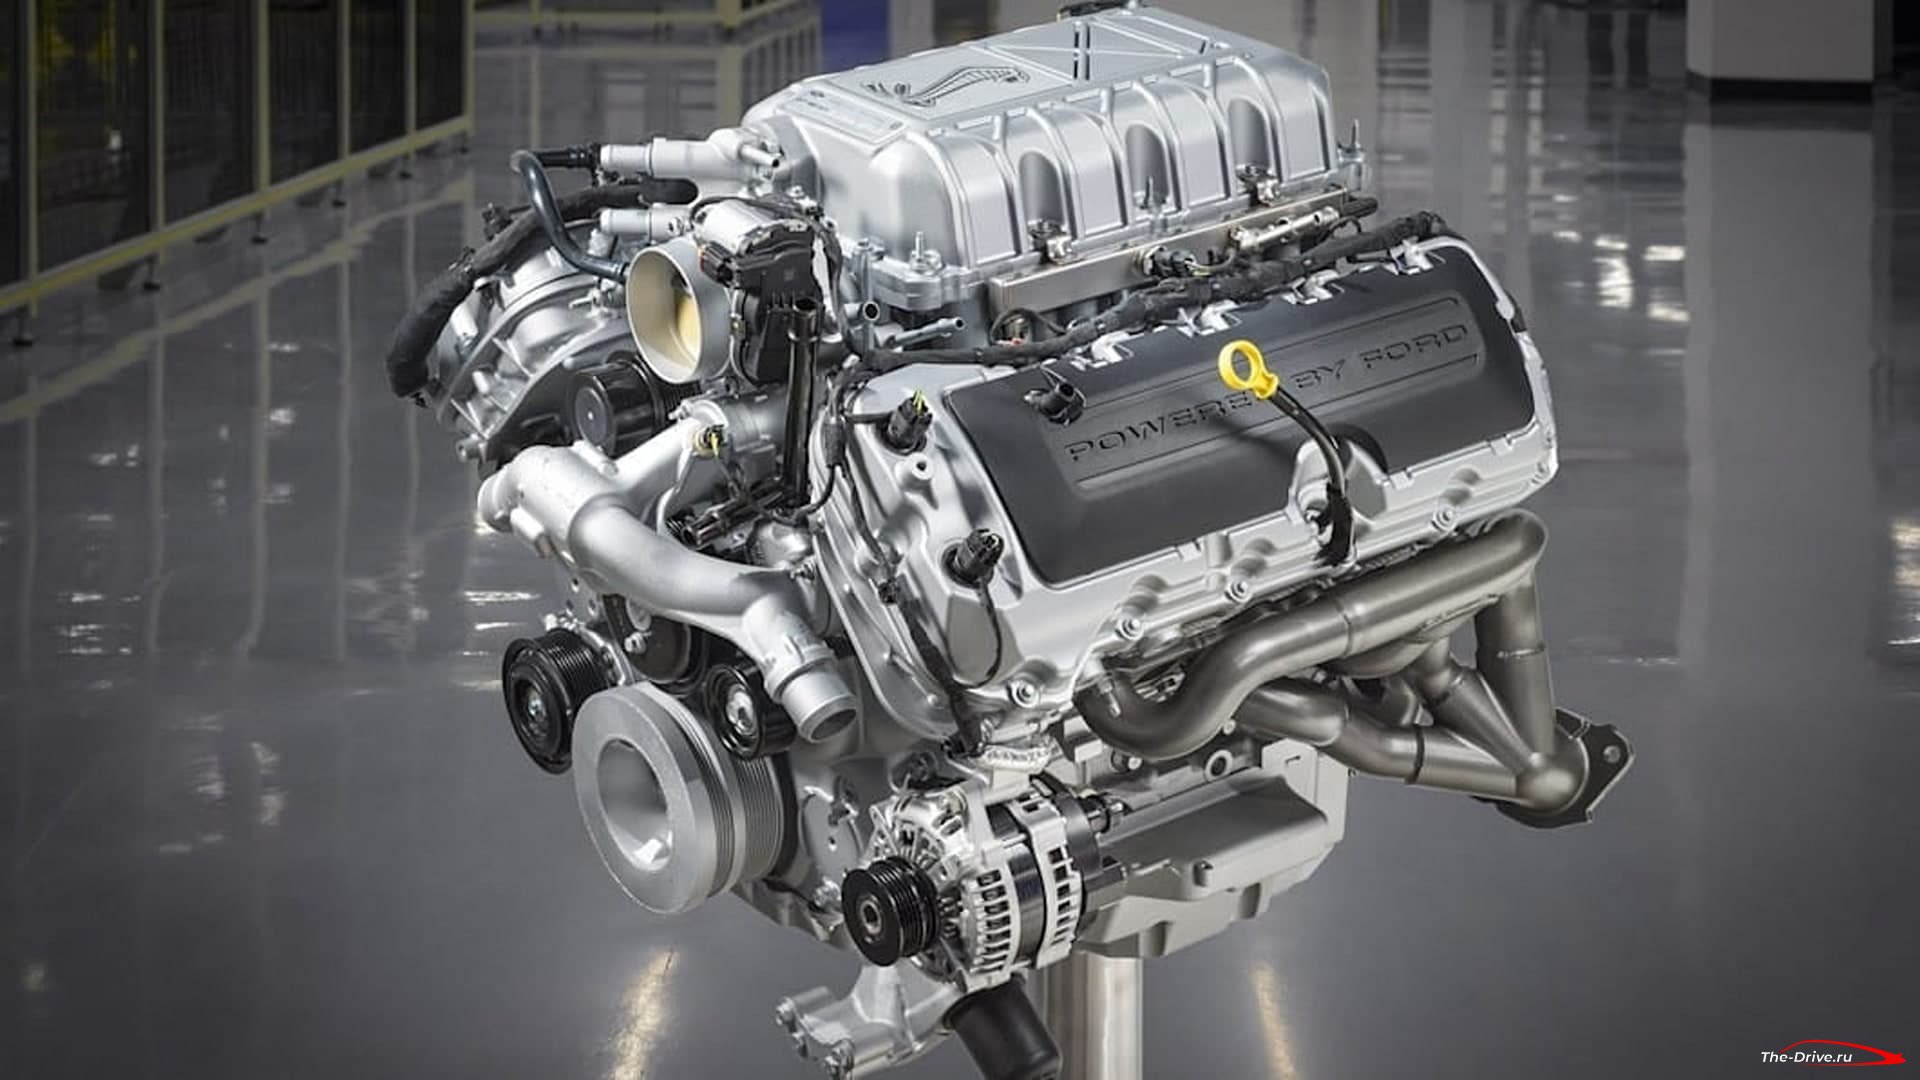 Двигатель Ford Predator V8 подорожал до 27 295 долларов